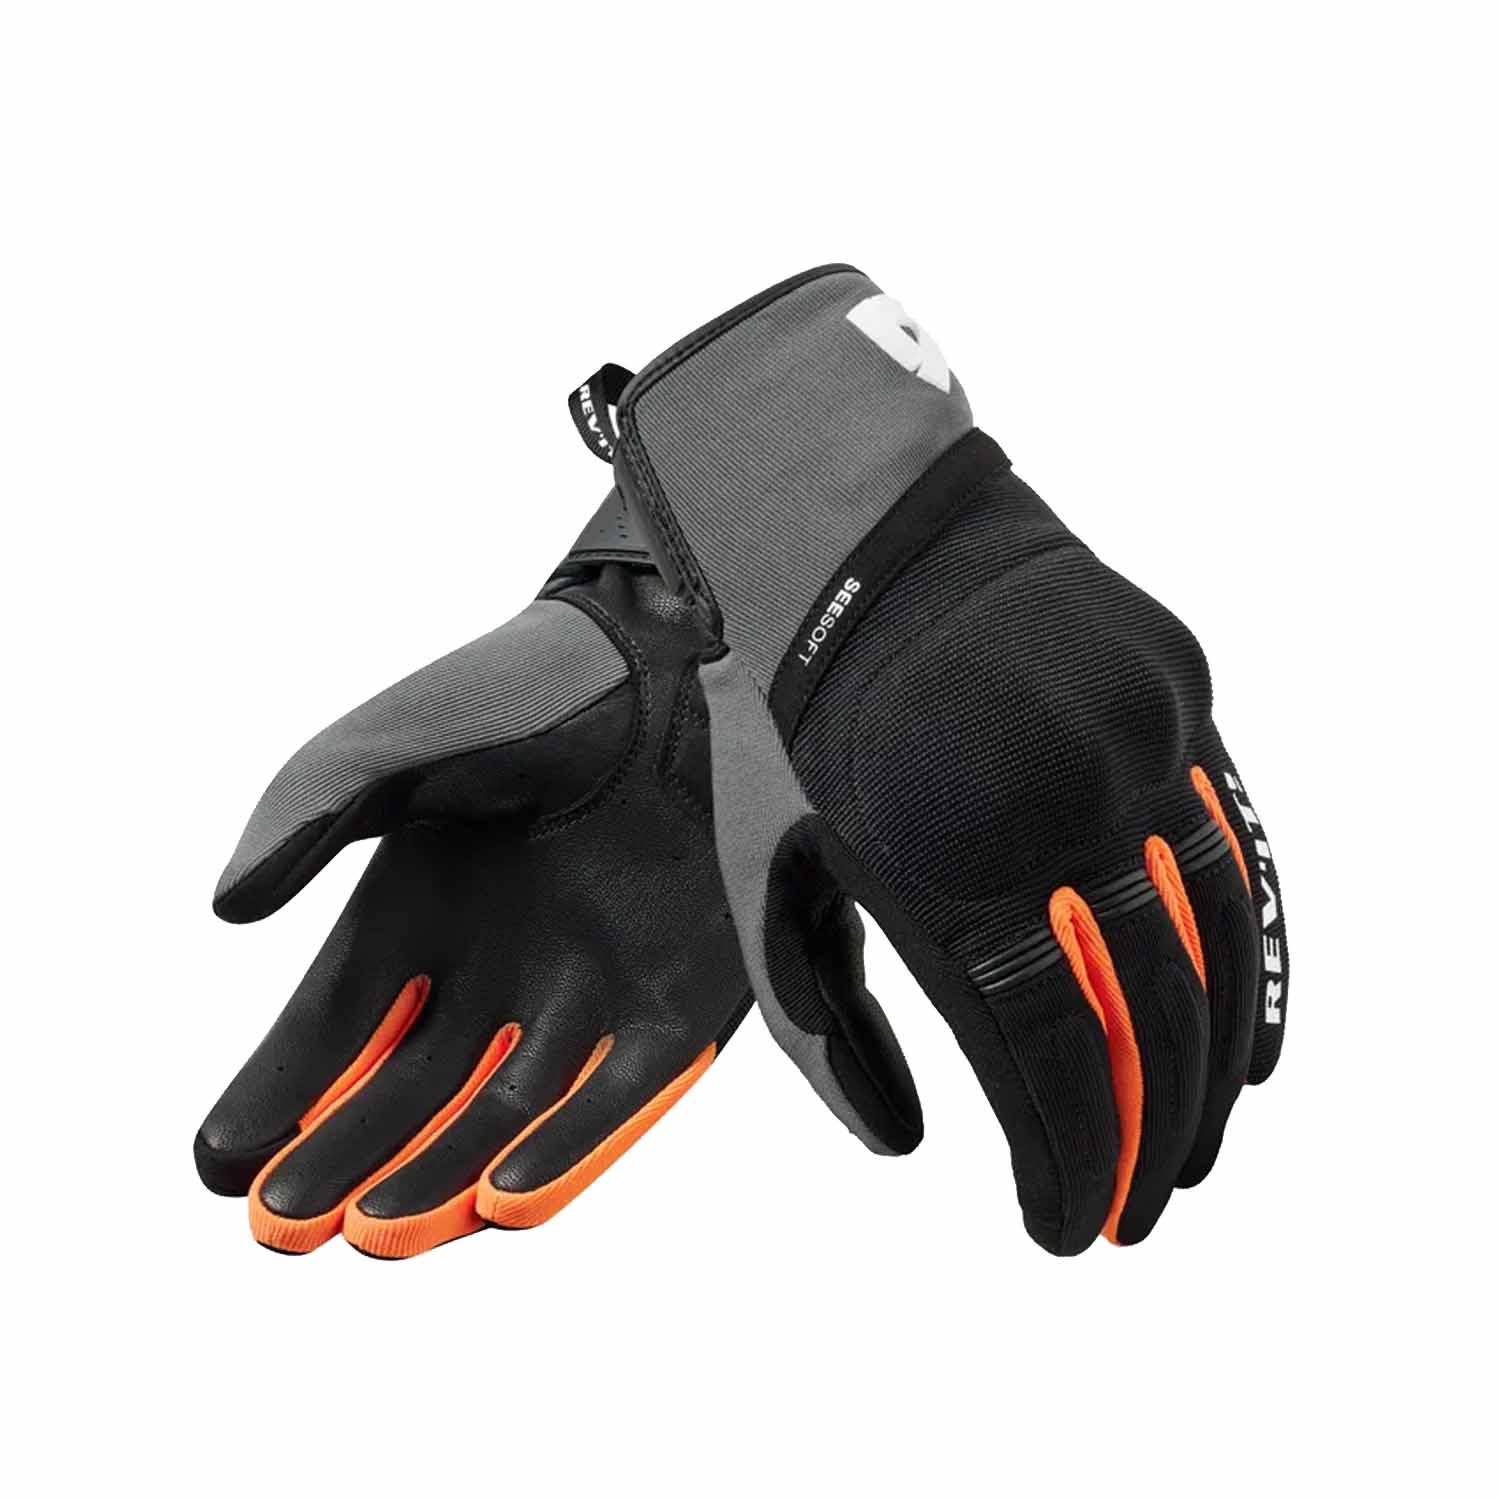 Image of REV'IT! Mosca 2 Gloves Black Orange Größe L